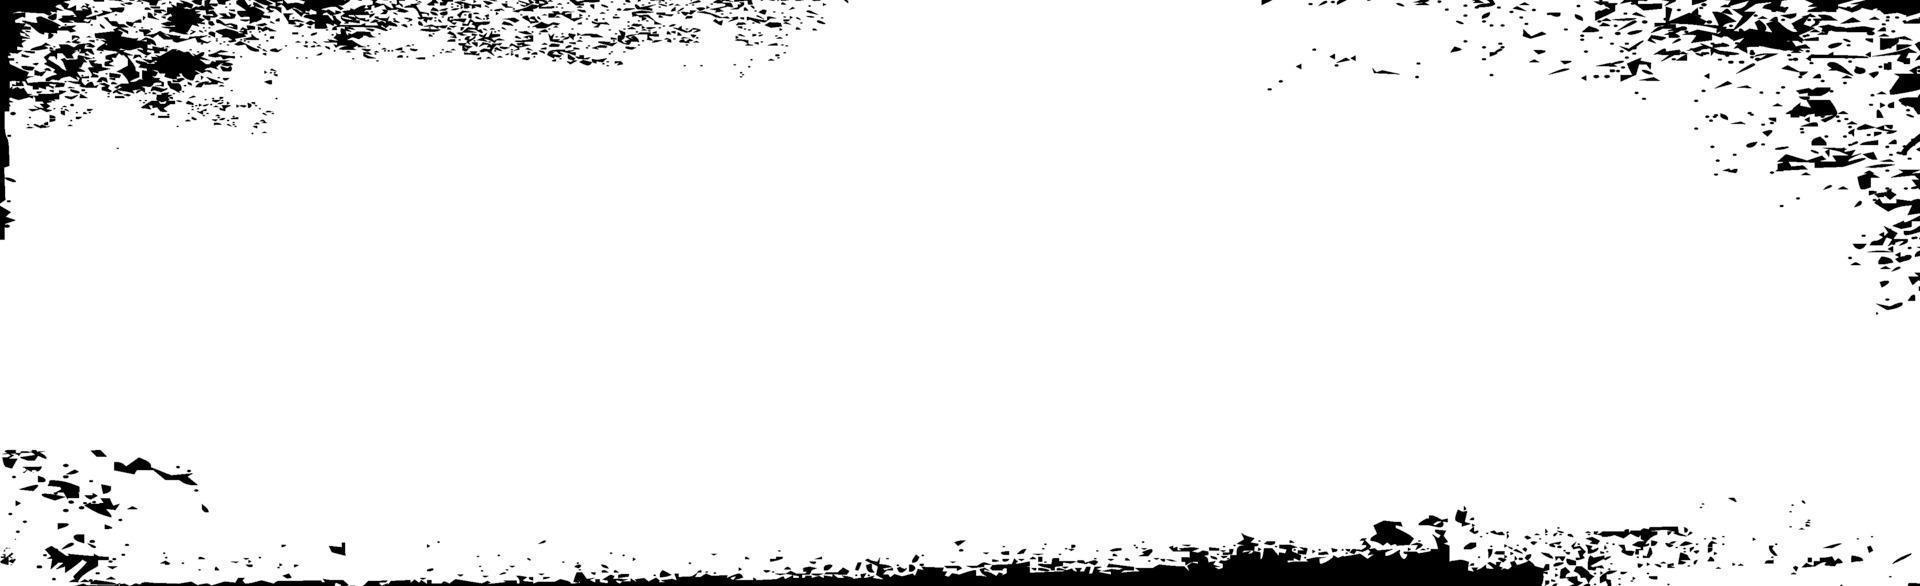 grunge lignes noires et points sur fond blanc - illustration vectorielle vecteur